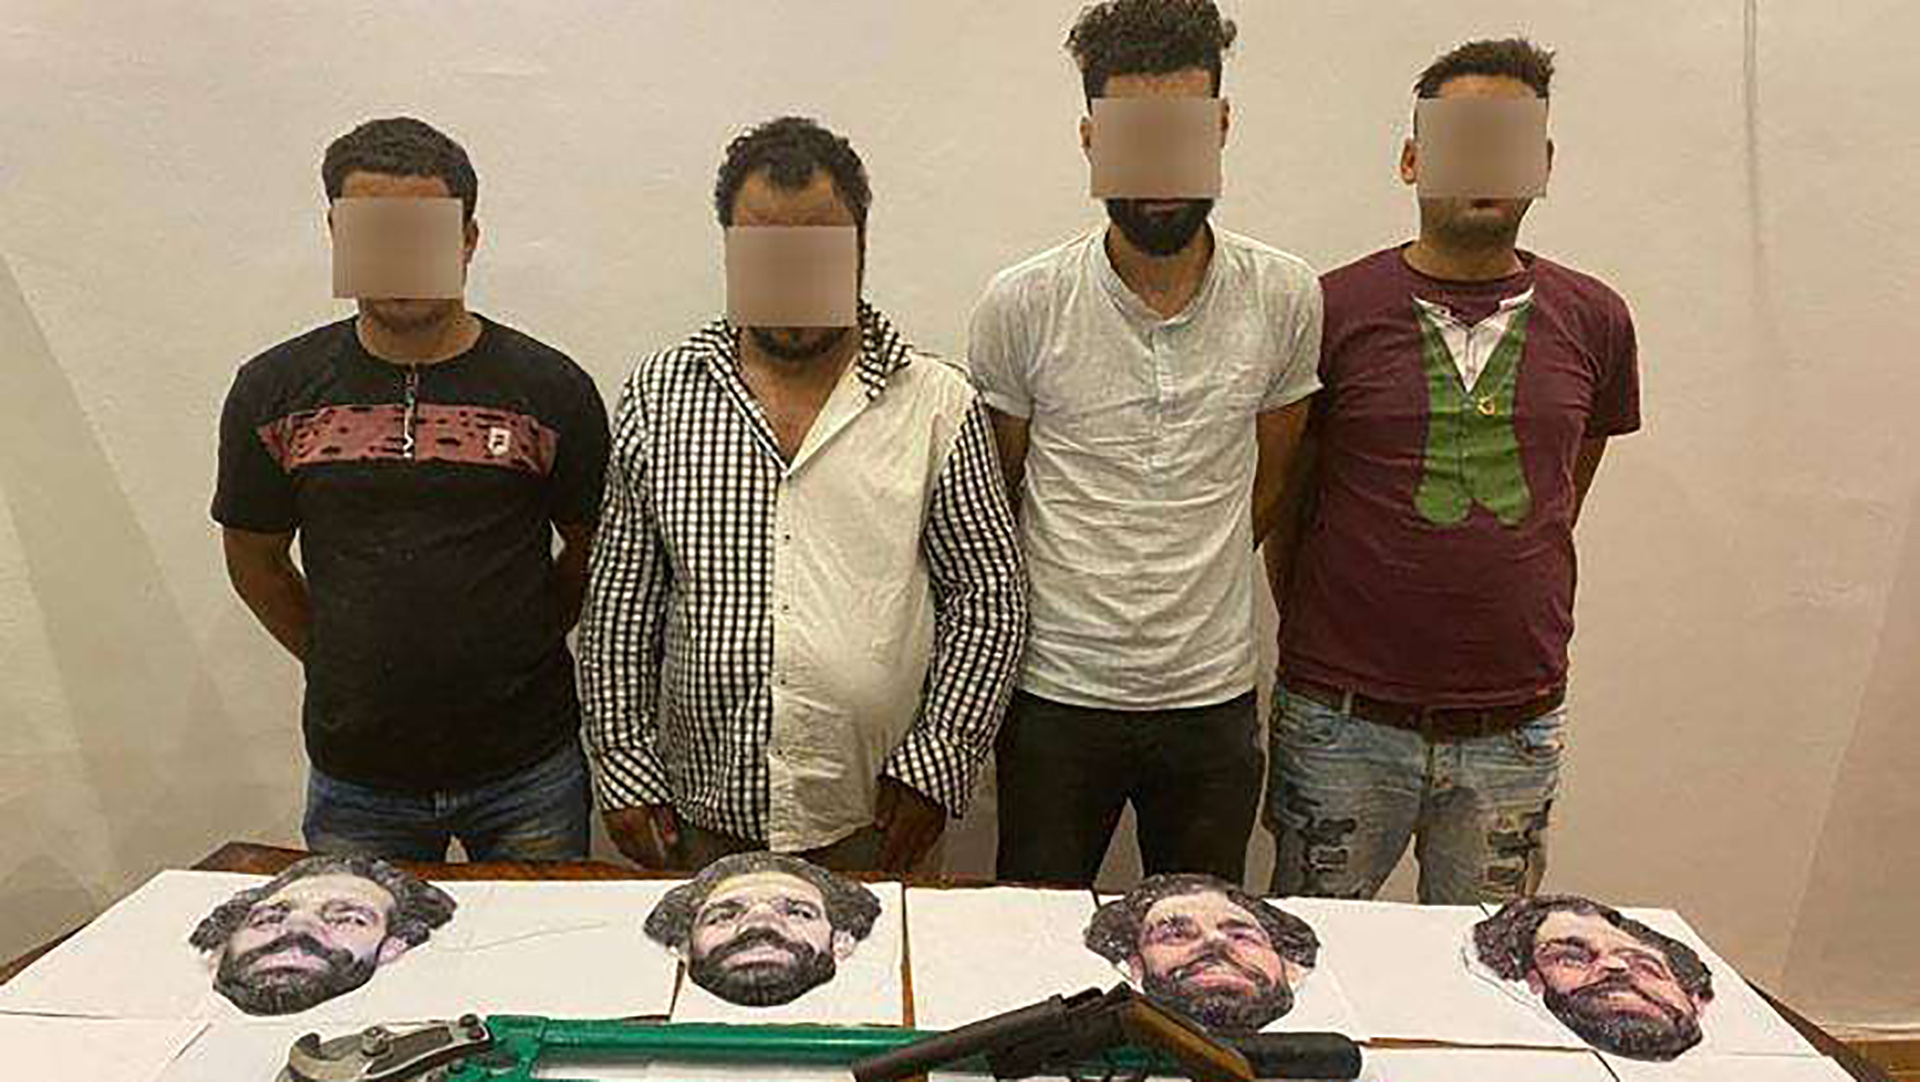 Des braqueurs avec des masques de Salah arrêtés par la police égyptienne